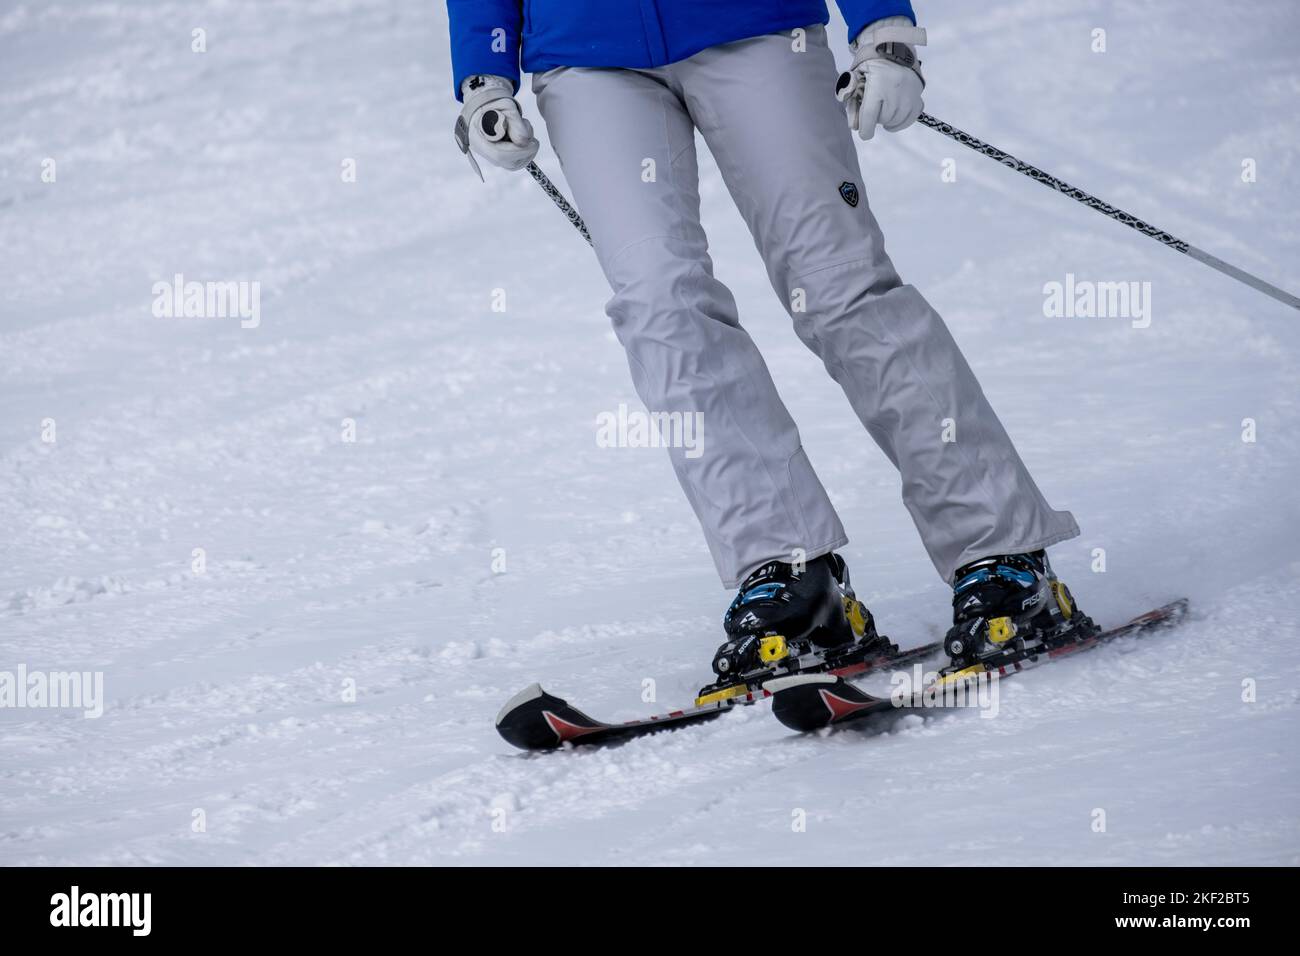 Sheregesh, Rusia. 24.02.2022. Apertura de la temporada de esquí en la estación de Sheregesh. Fotografía de alta calidad. Fotografía de alta calidad Foto de stock